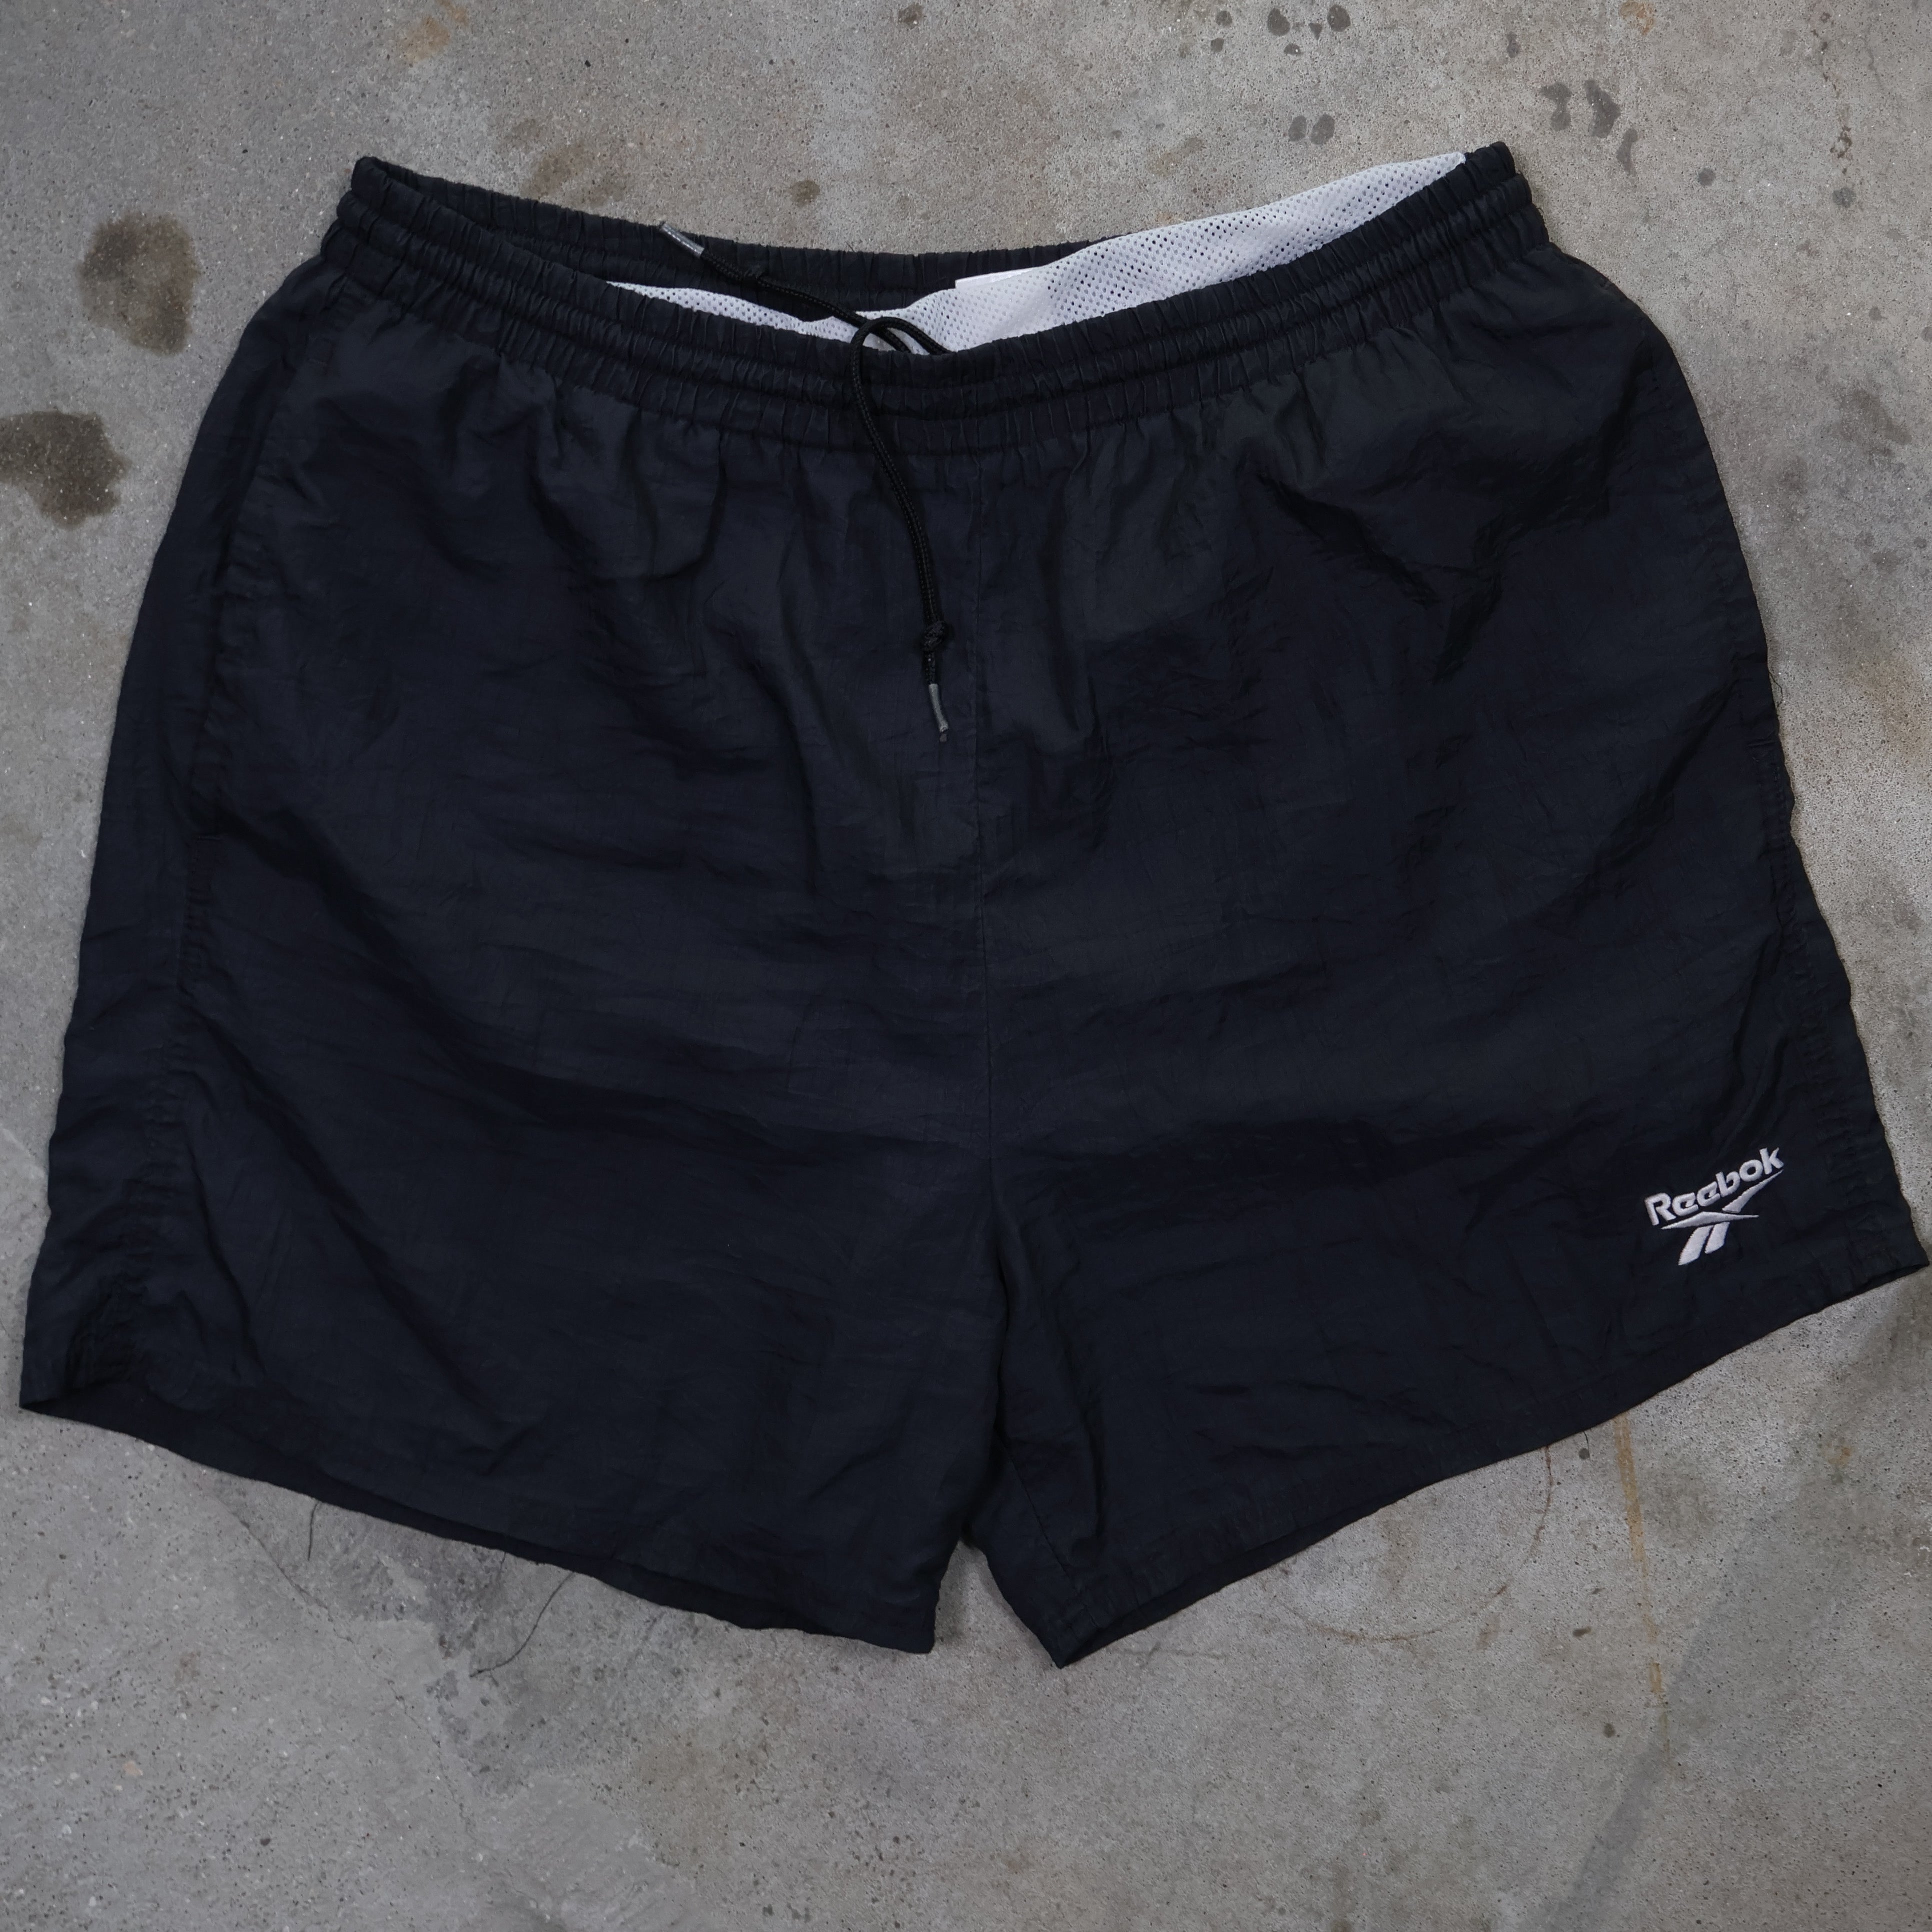 Black Reebok Nylon Shorts 00s (Large)